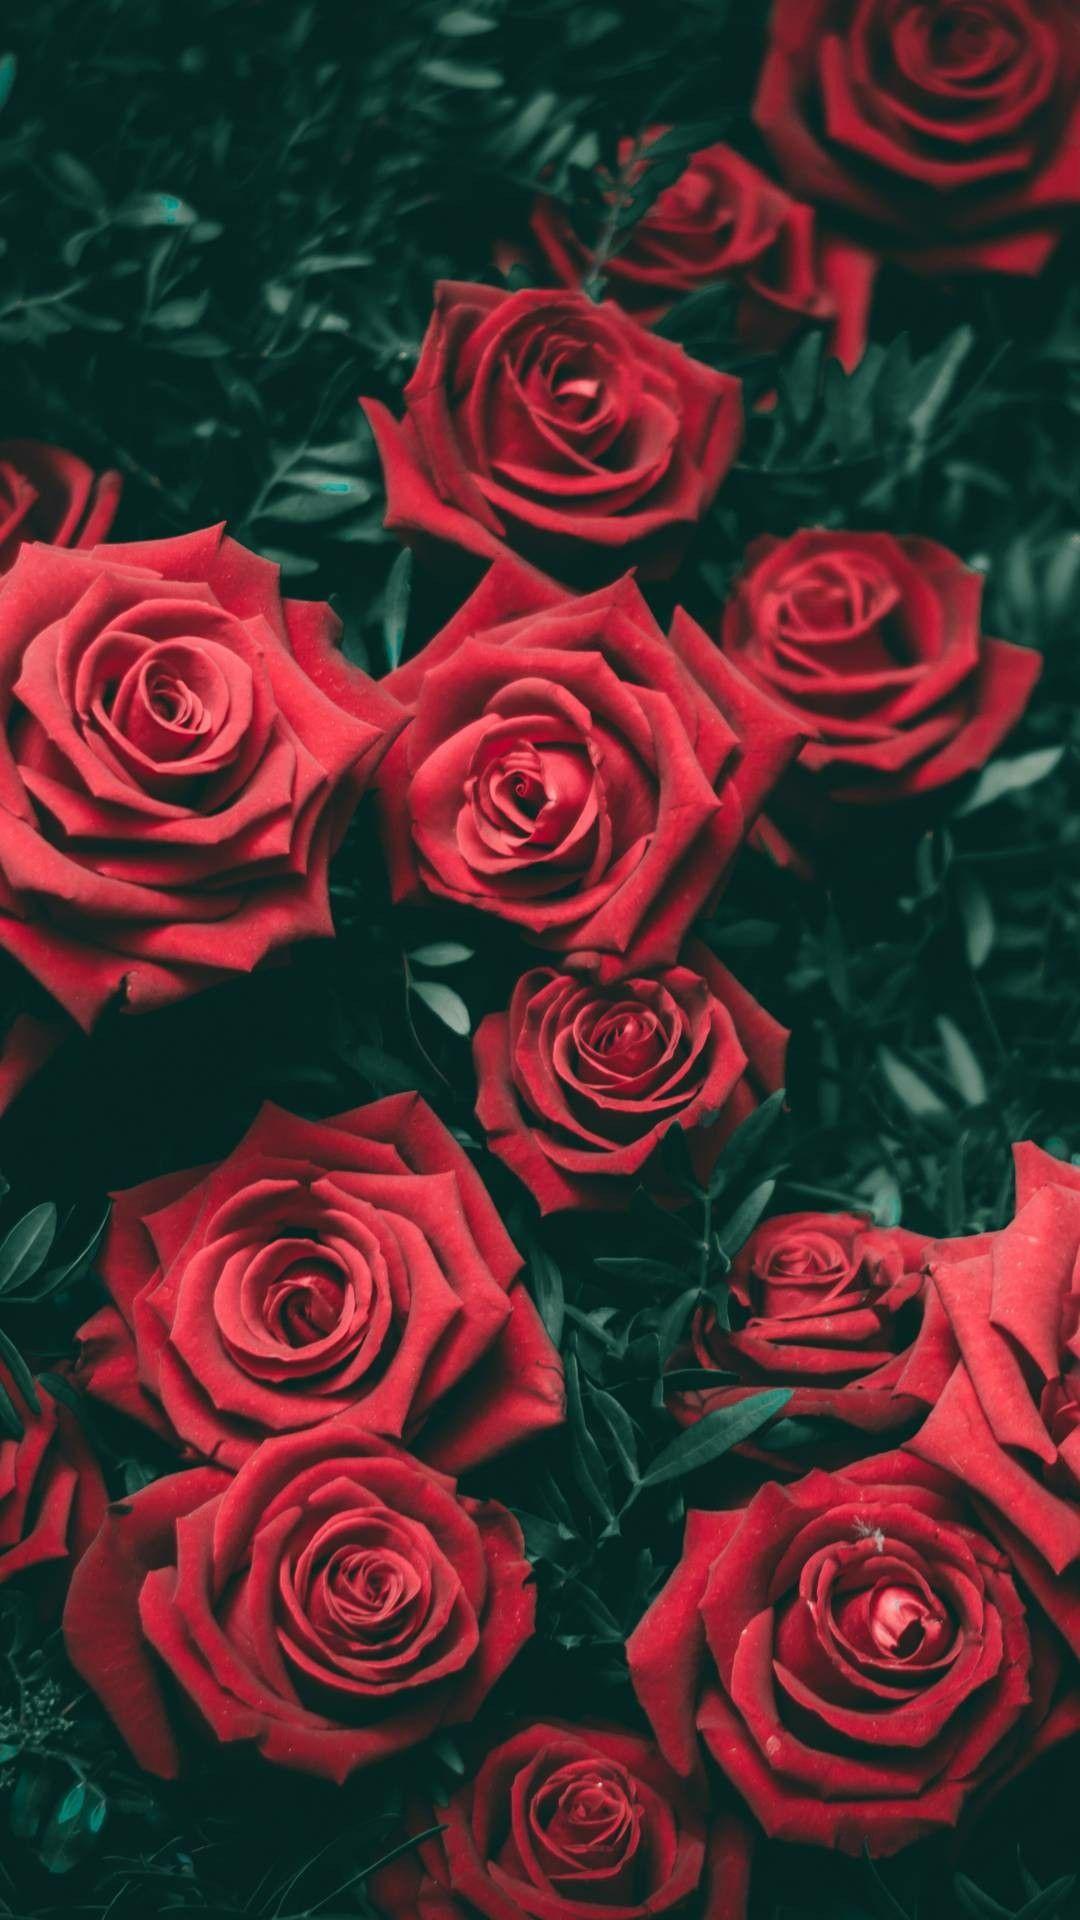 Red Rose Wallpaper. Rose wallpaper, Flower